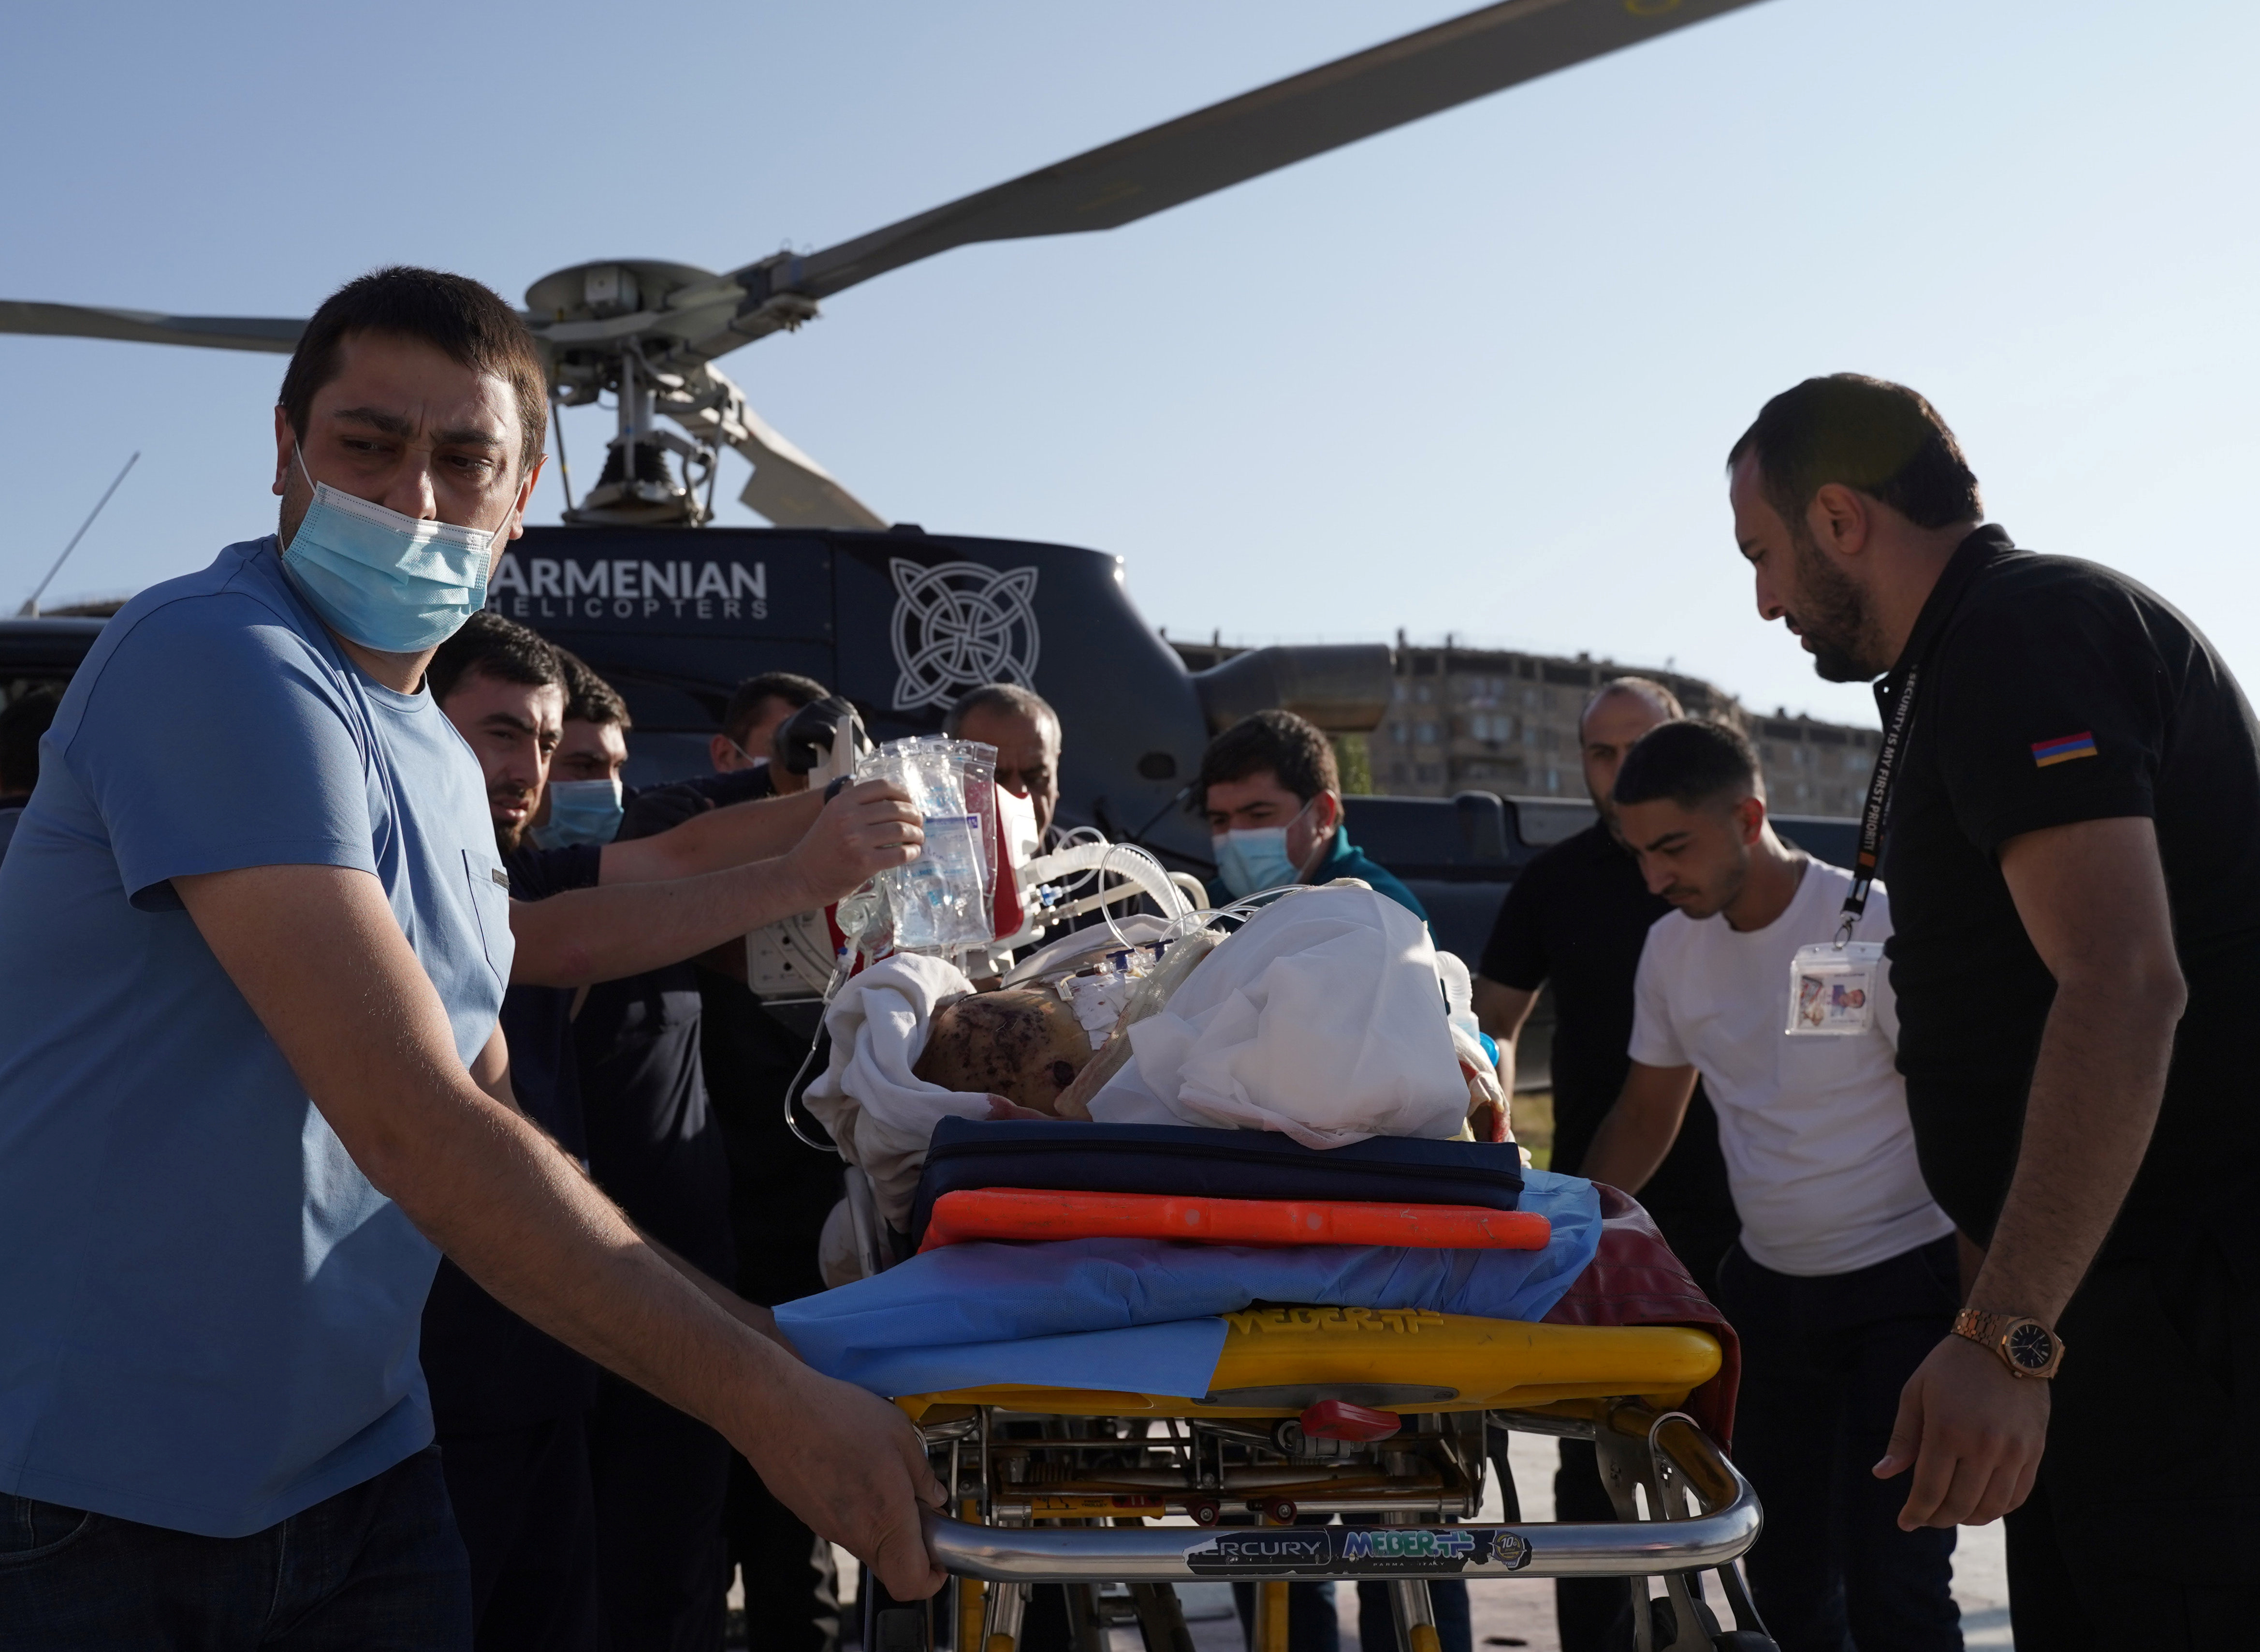 Un soldado armenio, que resultó herido en un enfrentamiento con las fuerzas azeríes en la región separatista de Nagorno-Karabaj, es transportado en una camilla después de ser transportado en helicóptero al Centro Médico Erebouni en Ereván, Armenia. Hakob Margaryan/Photolure via REUTERS 